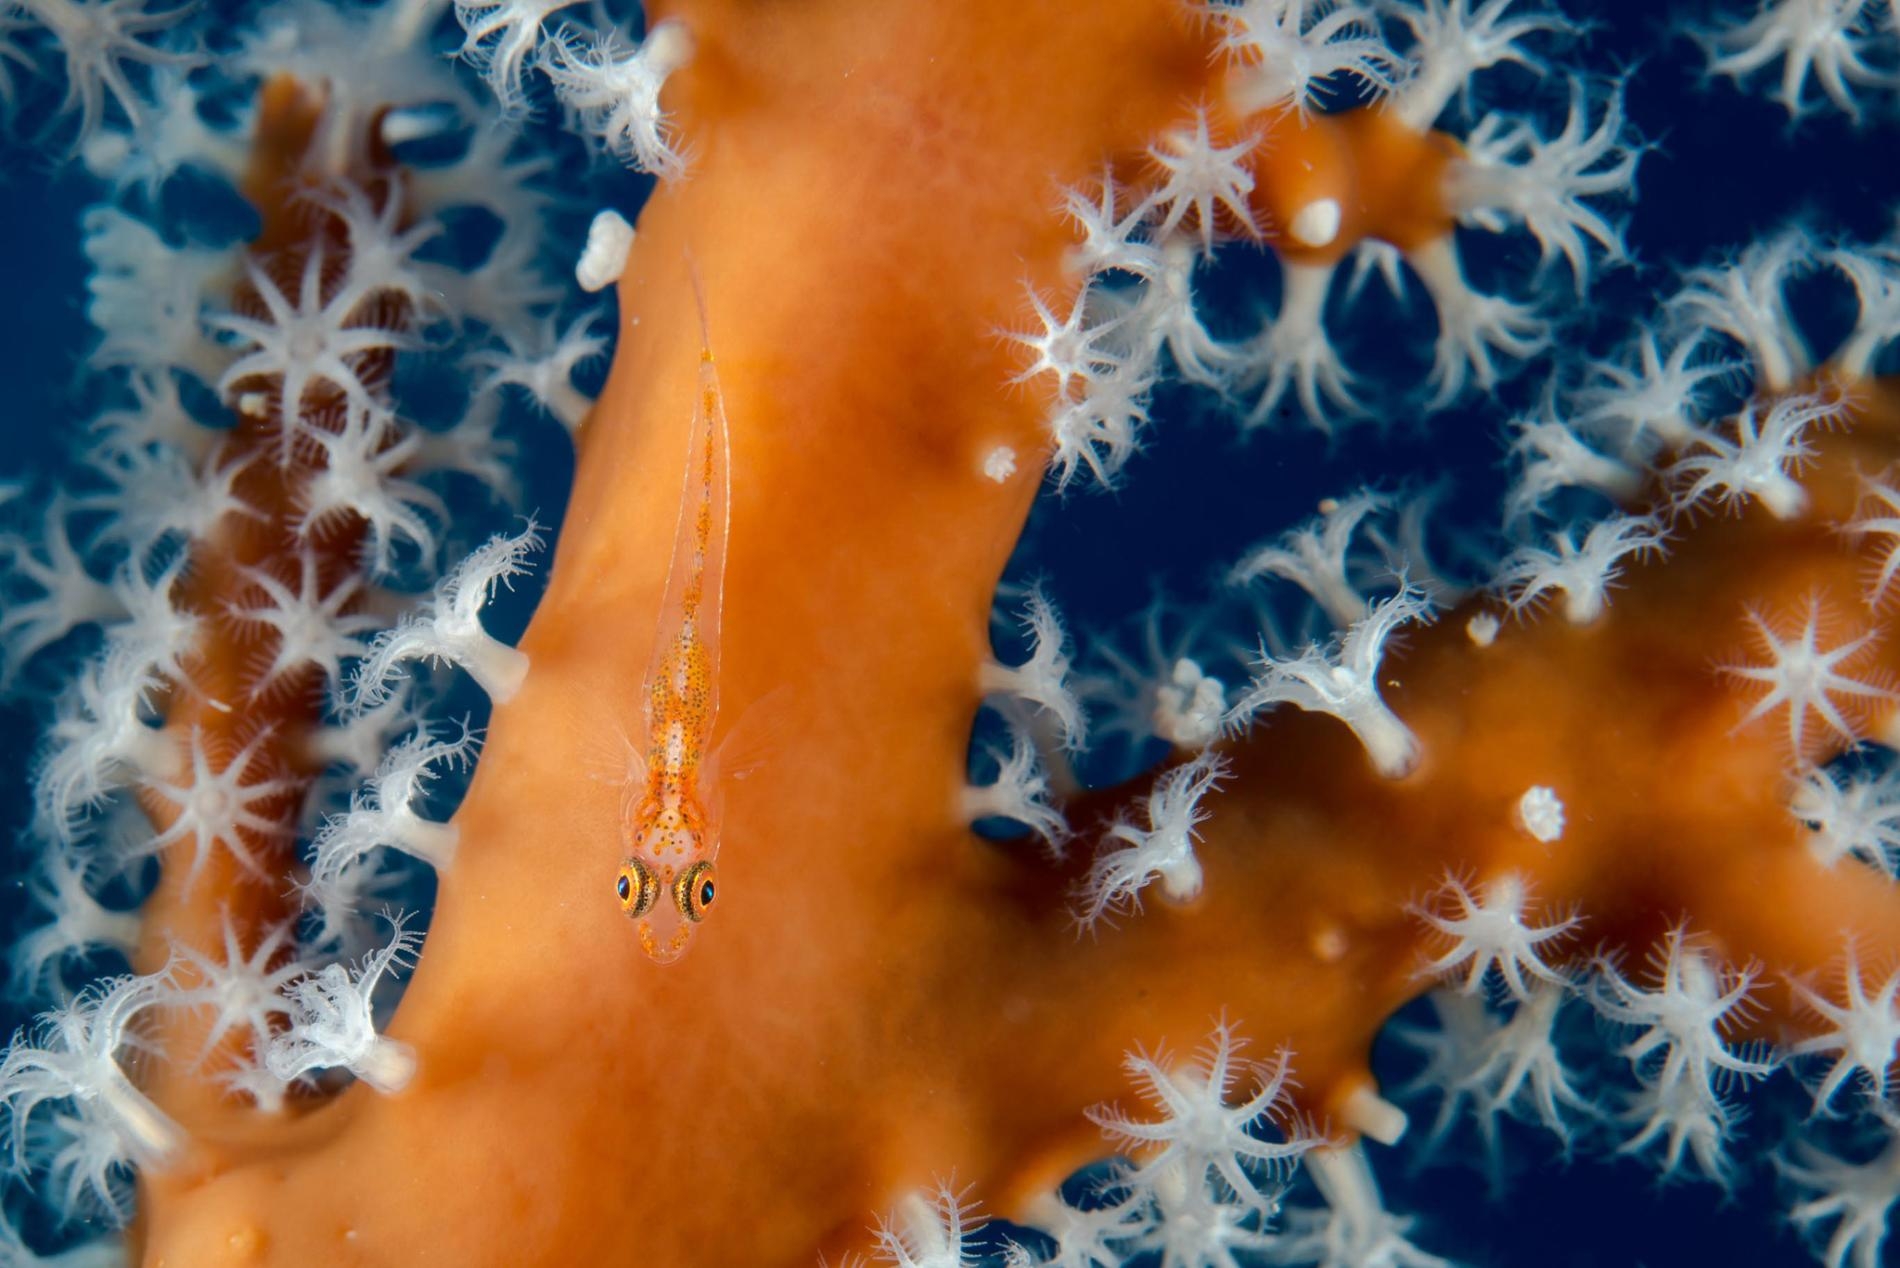 種類繁多的物種生活在帛琉大片受保護的海洋中，包括這條隱身在紅珊瑚分枝中的小蝦虎魚（<i> Gobiiformes</i>）。PHOTOGRAPH BY ENRIC SALA, NAT GEO IMAGE COLLECTION